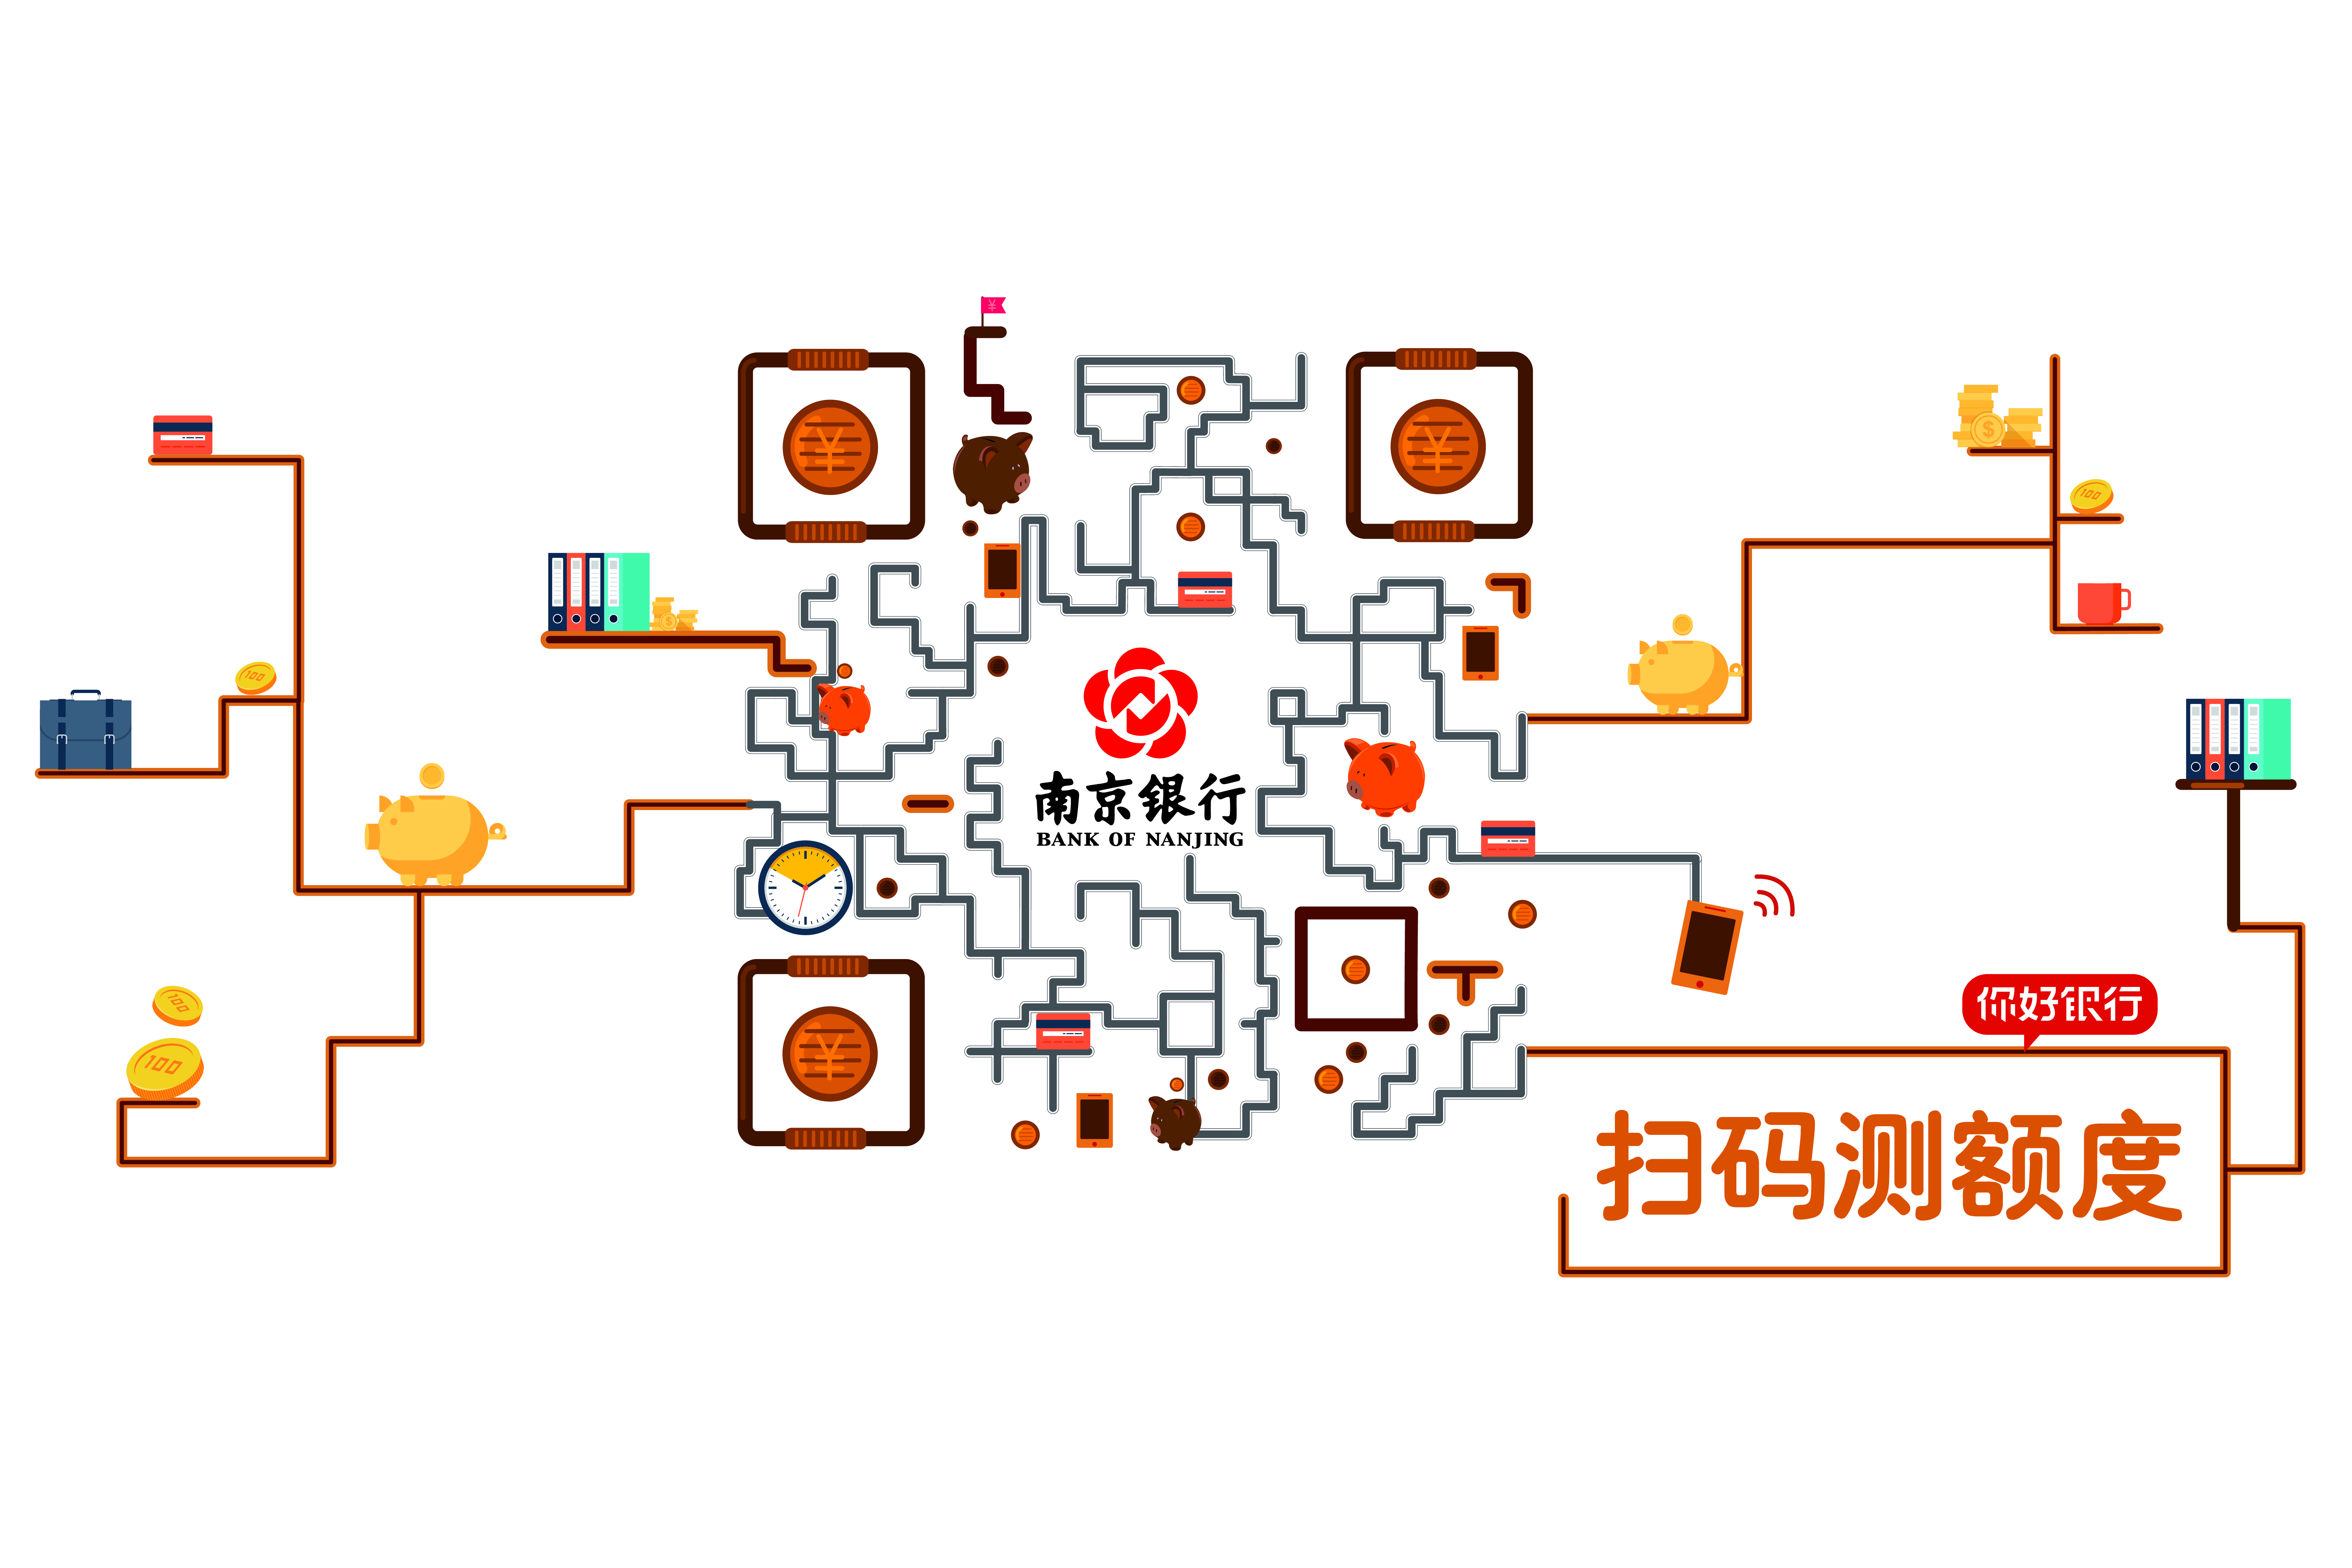 南京银行平面静态艺术二维码-创意二维码-第九工场设计外包